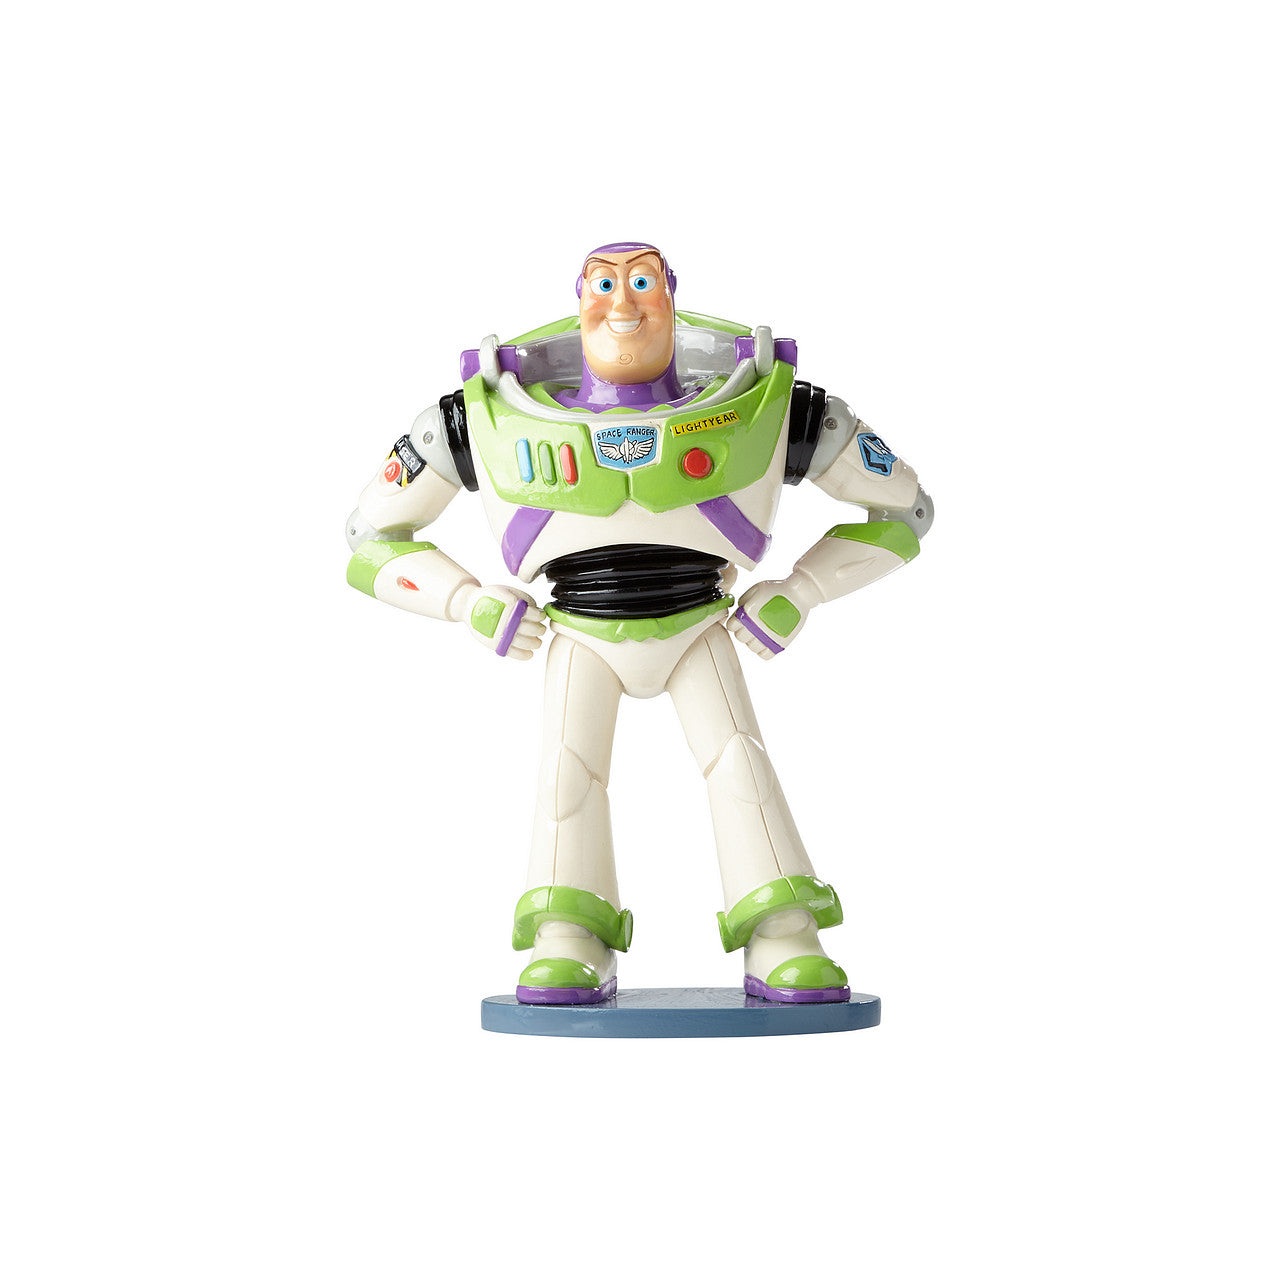 Buzz Lightyear Figurine